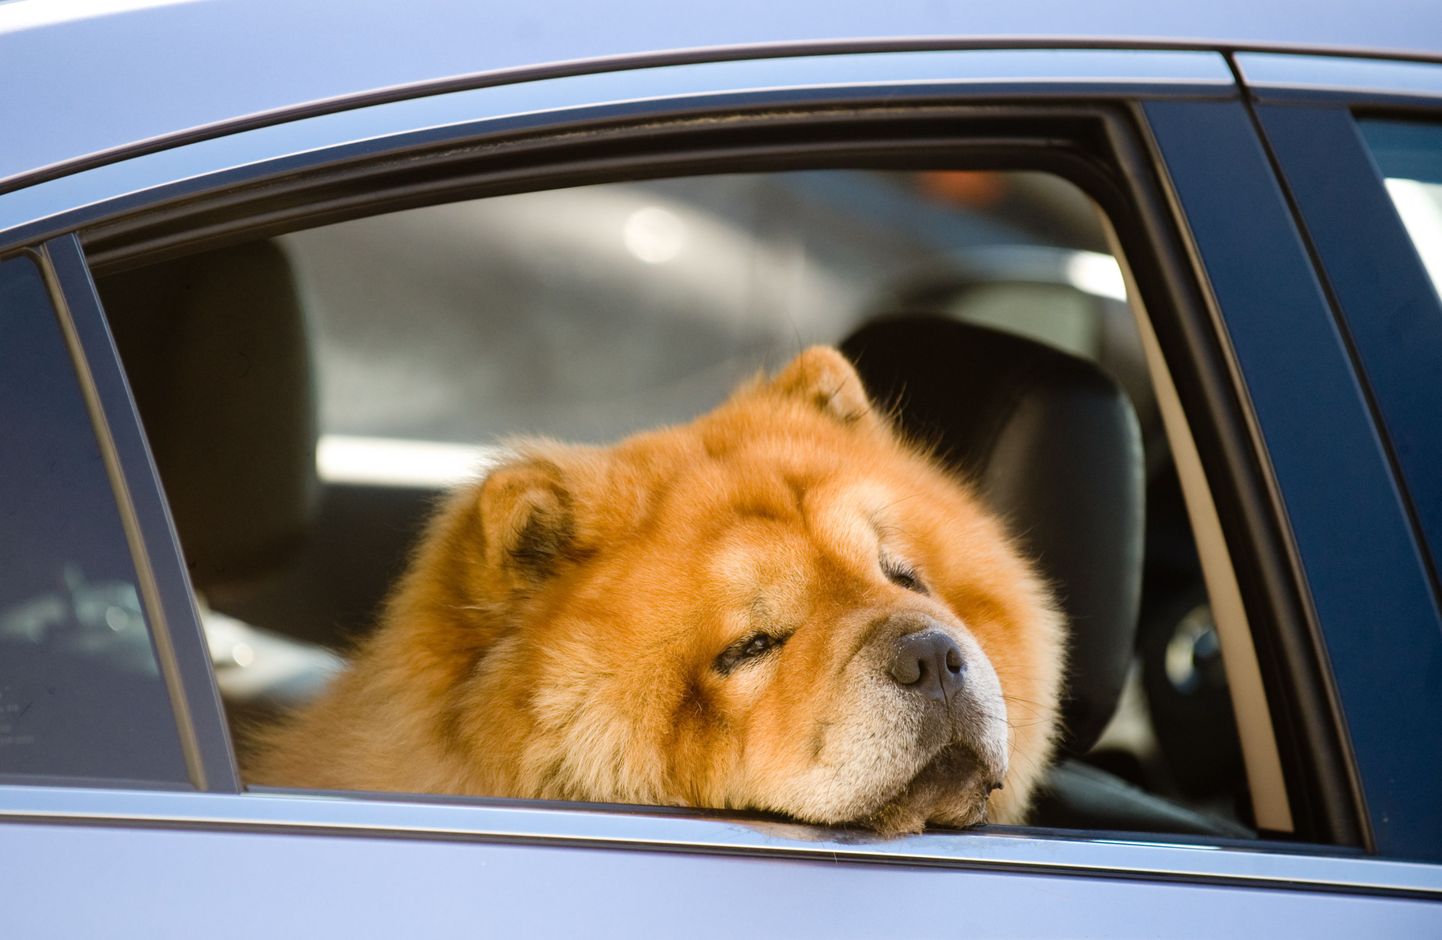 Autosse jäetud koer ei ole õnnelik.